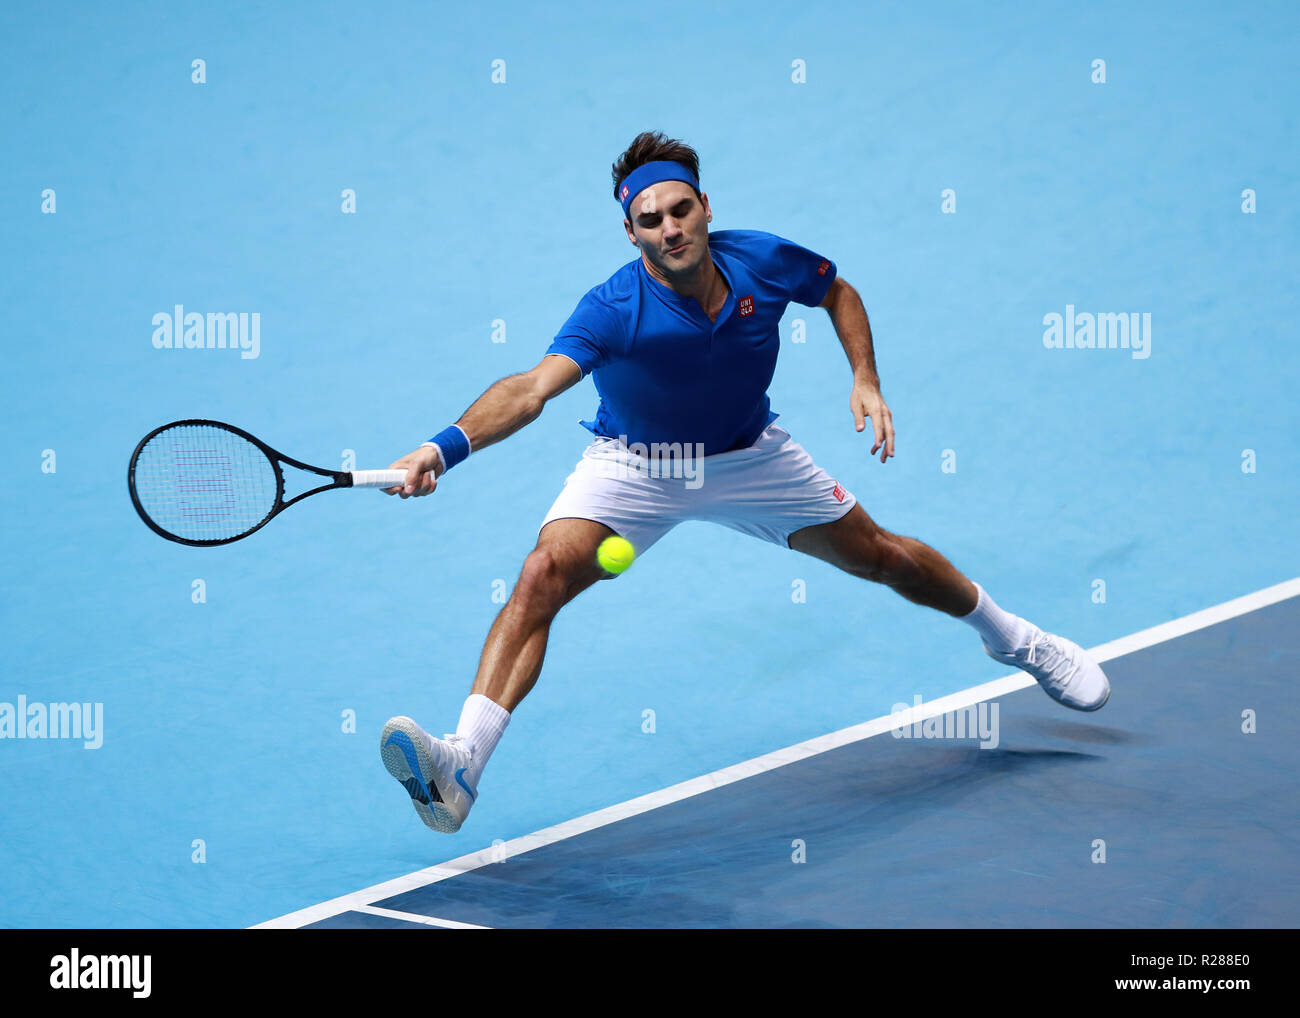 17 novembre 2018, O2 Arena, London, England ; Nitto ATP Tennis Finale, Roger Federer (SUI) avec un tir du revers dans son jeu contre Alexander Zverev (GER) Banque D'Images